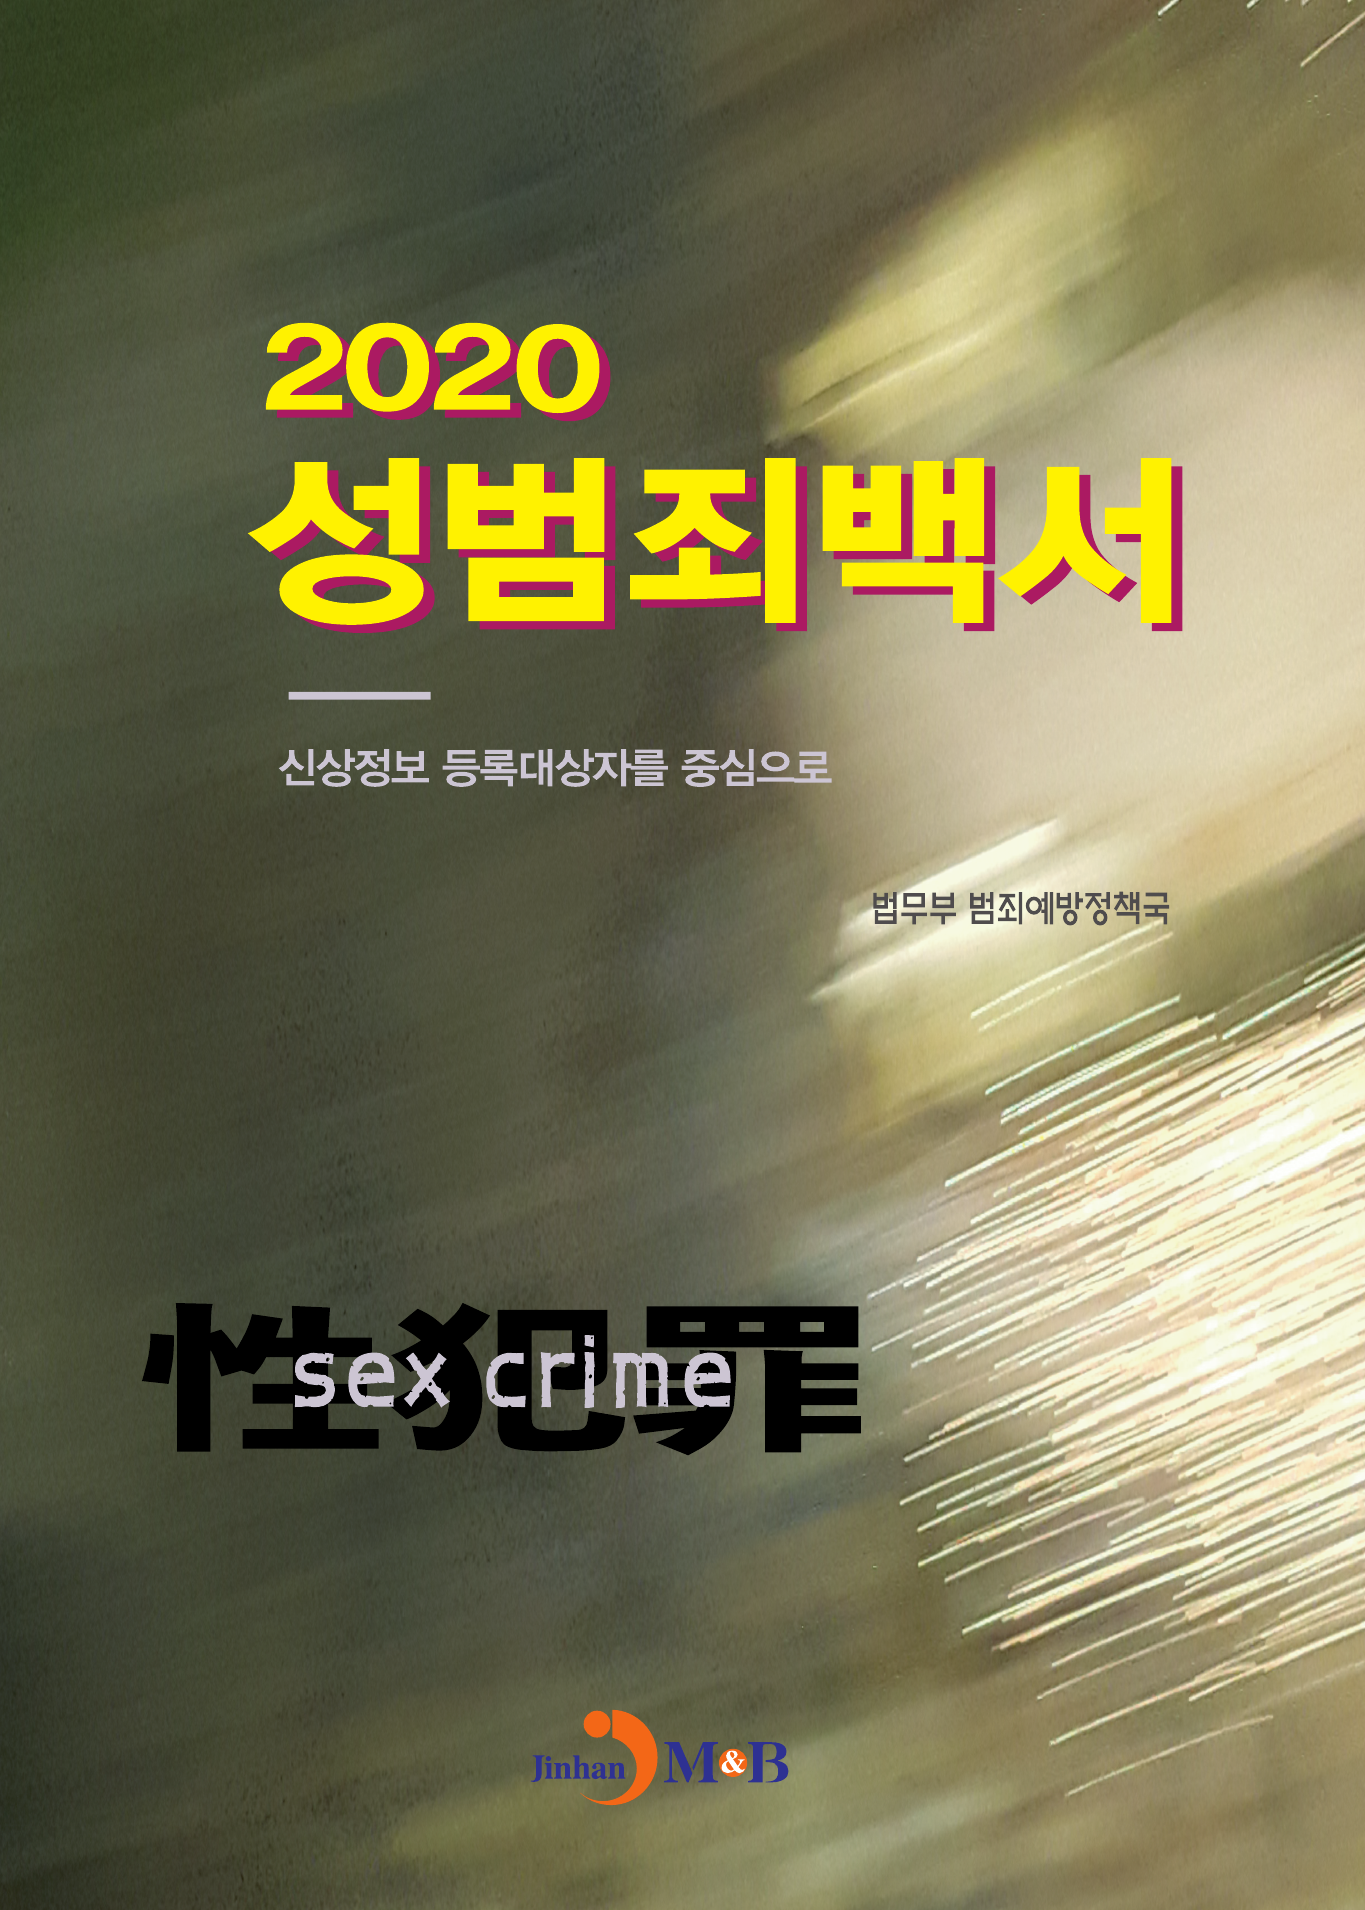 성범죄백서(2020) 신상정보 등록대상자를 중심으로